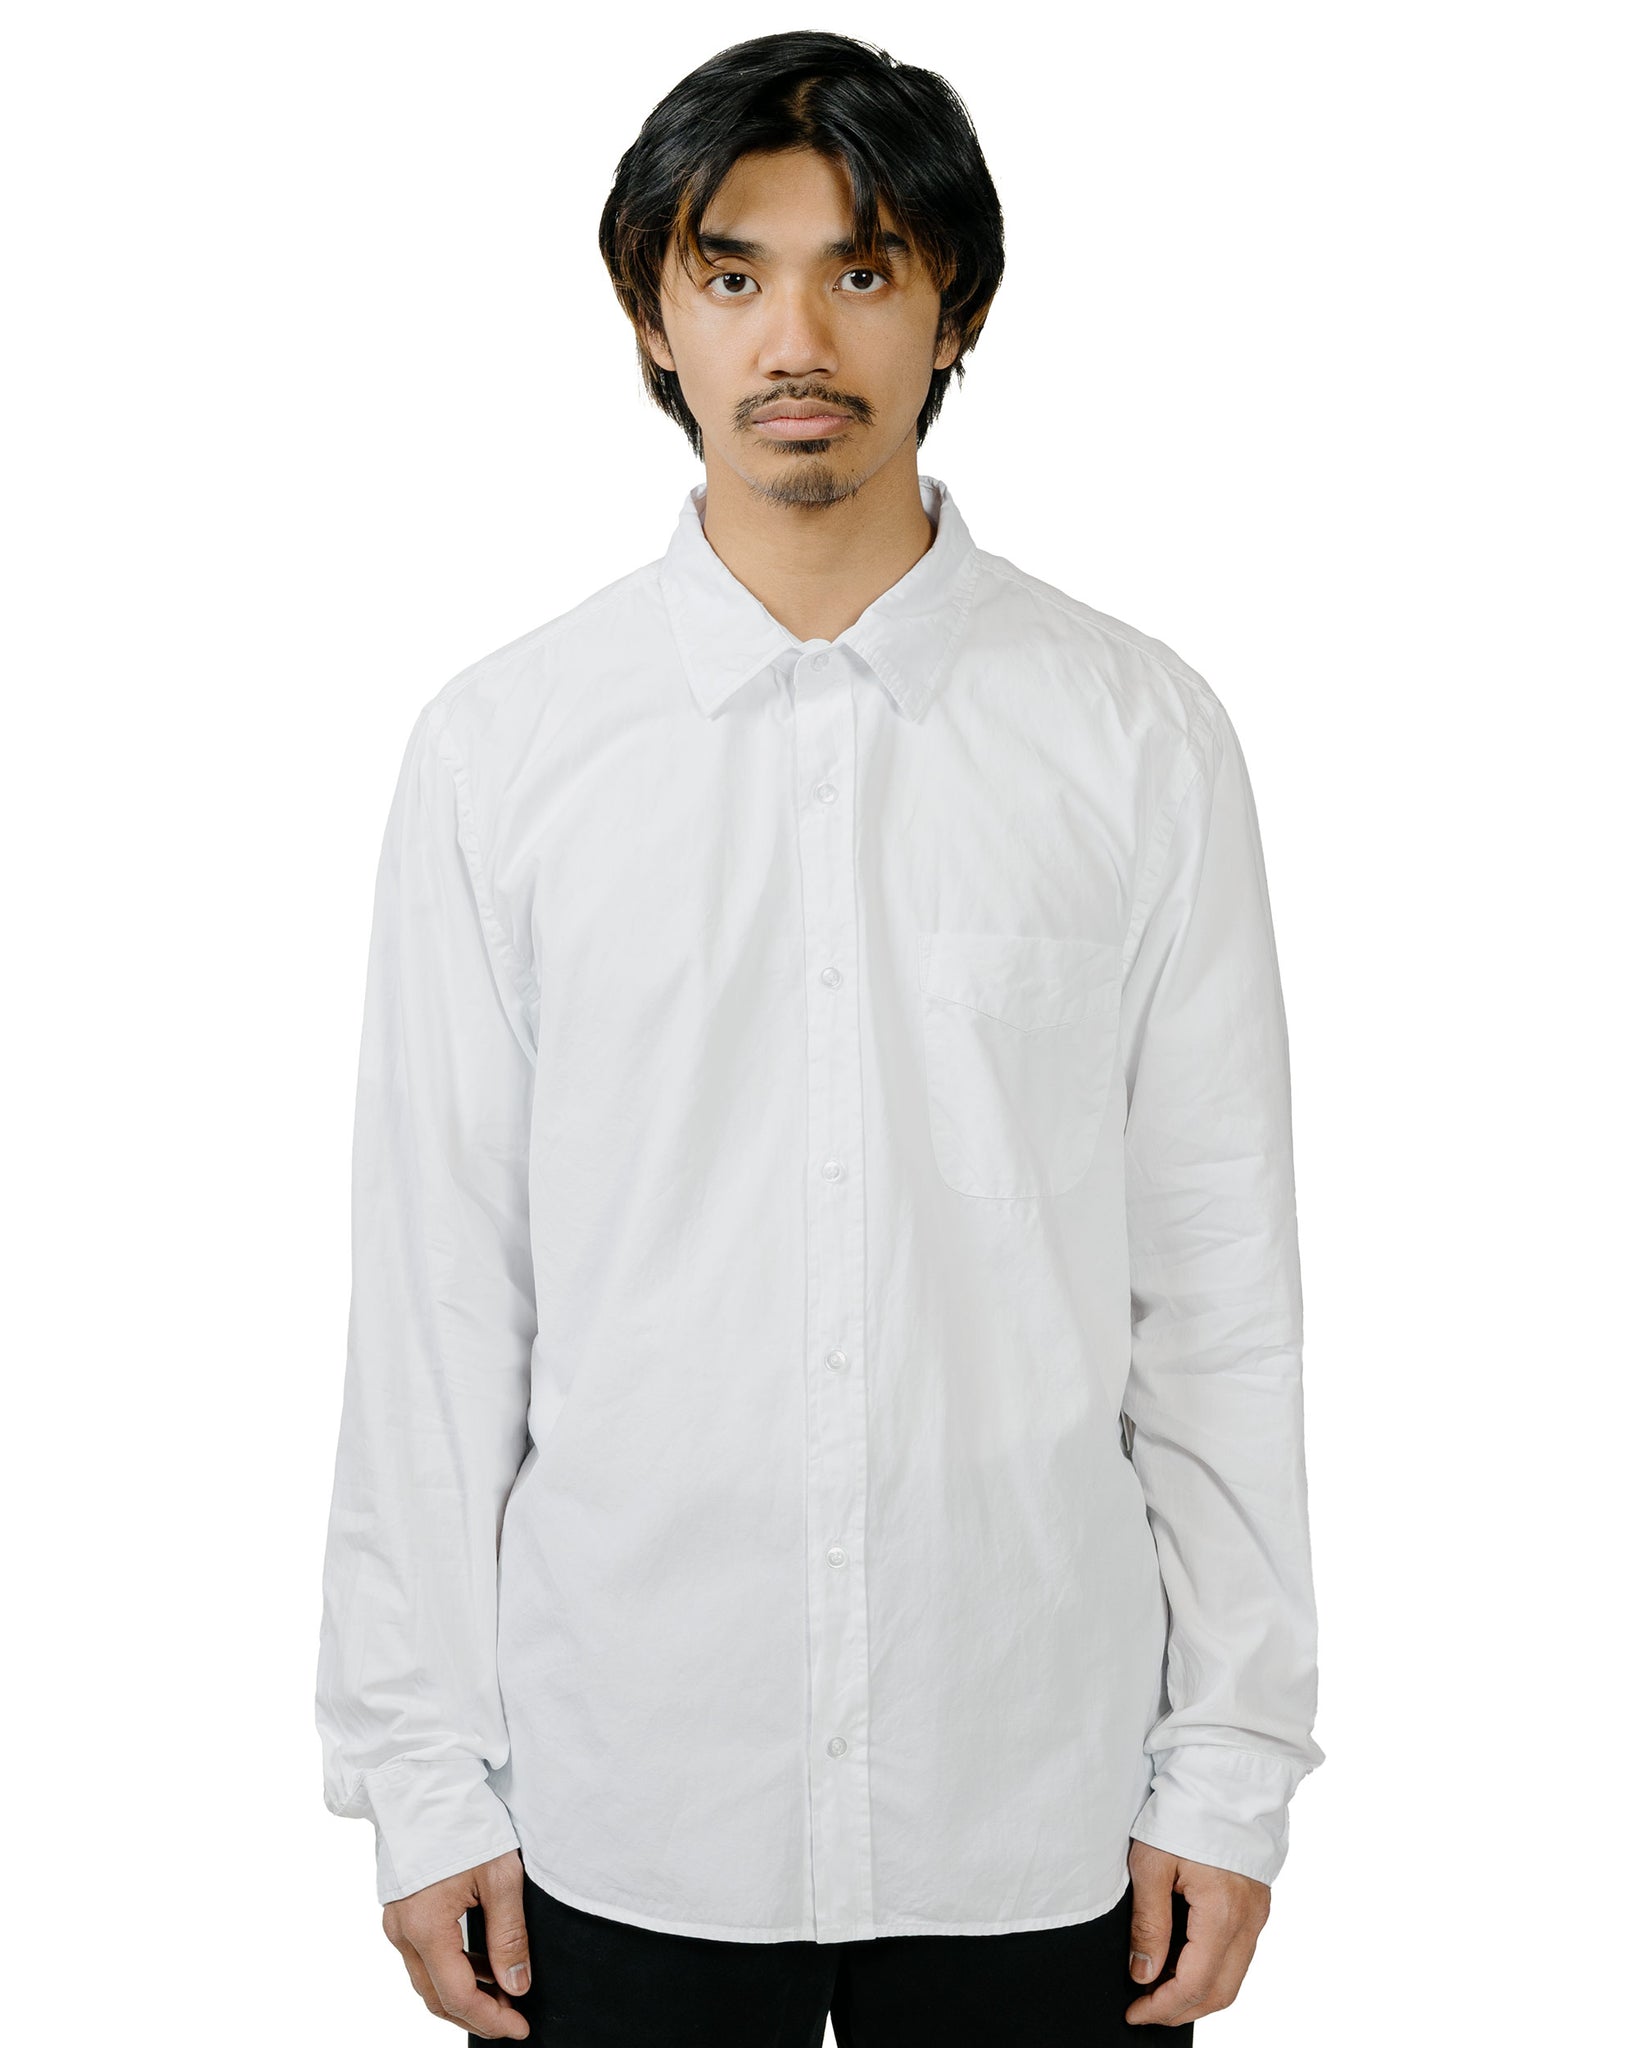 Save Khaki United Poplin Standard Shirt White model front